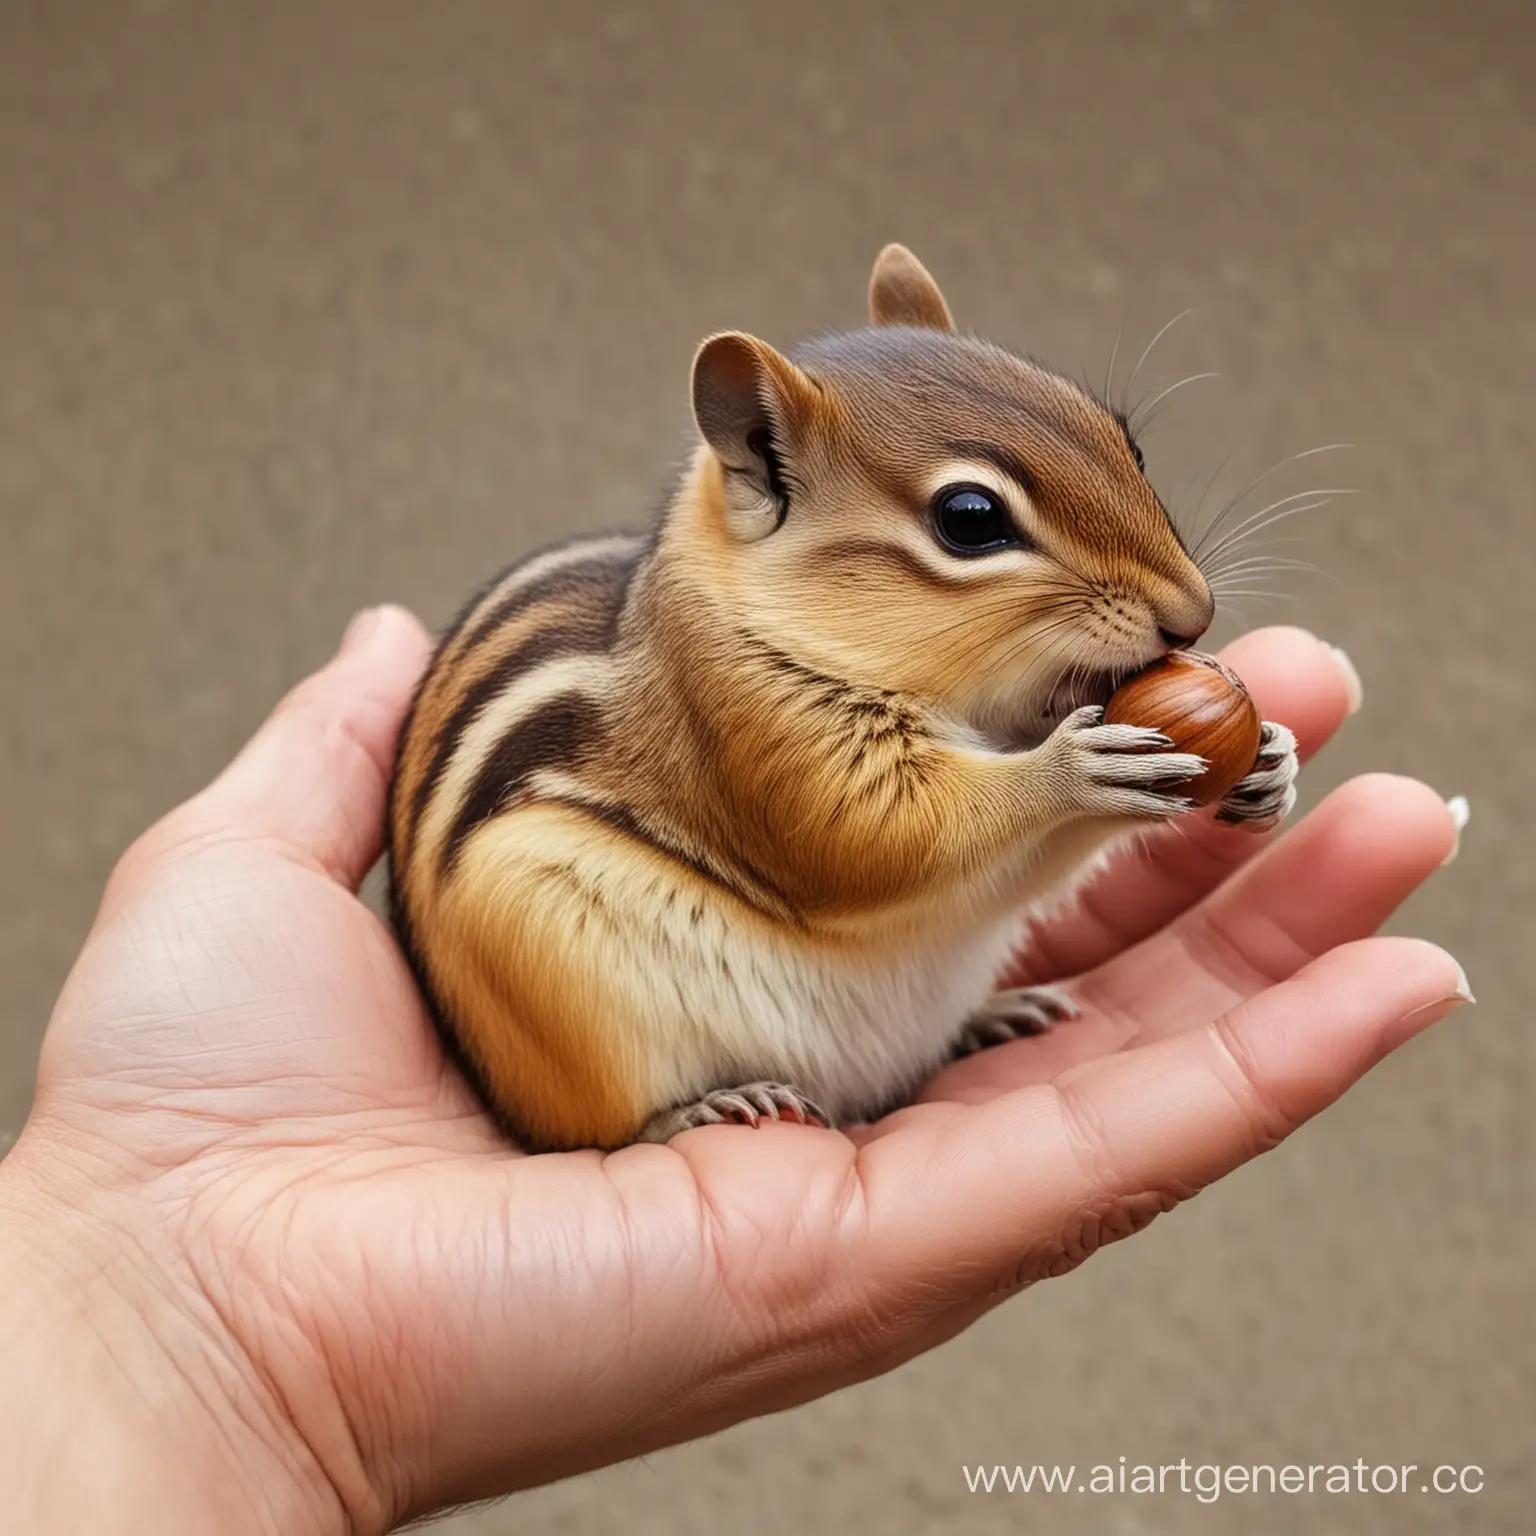 Маленький пухленький бурундук на руке у человека ест орех  